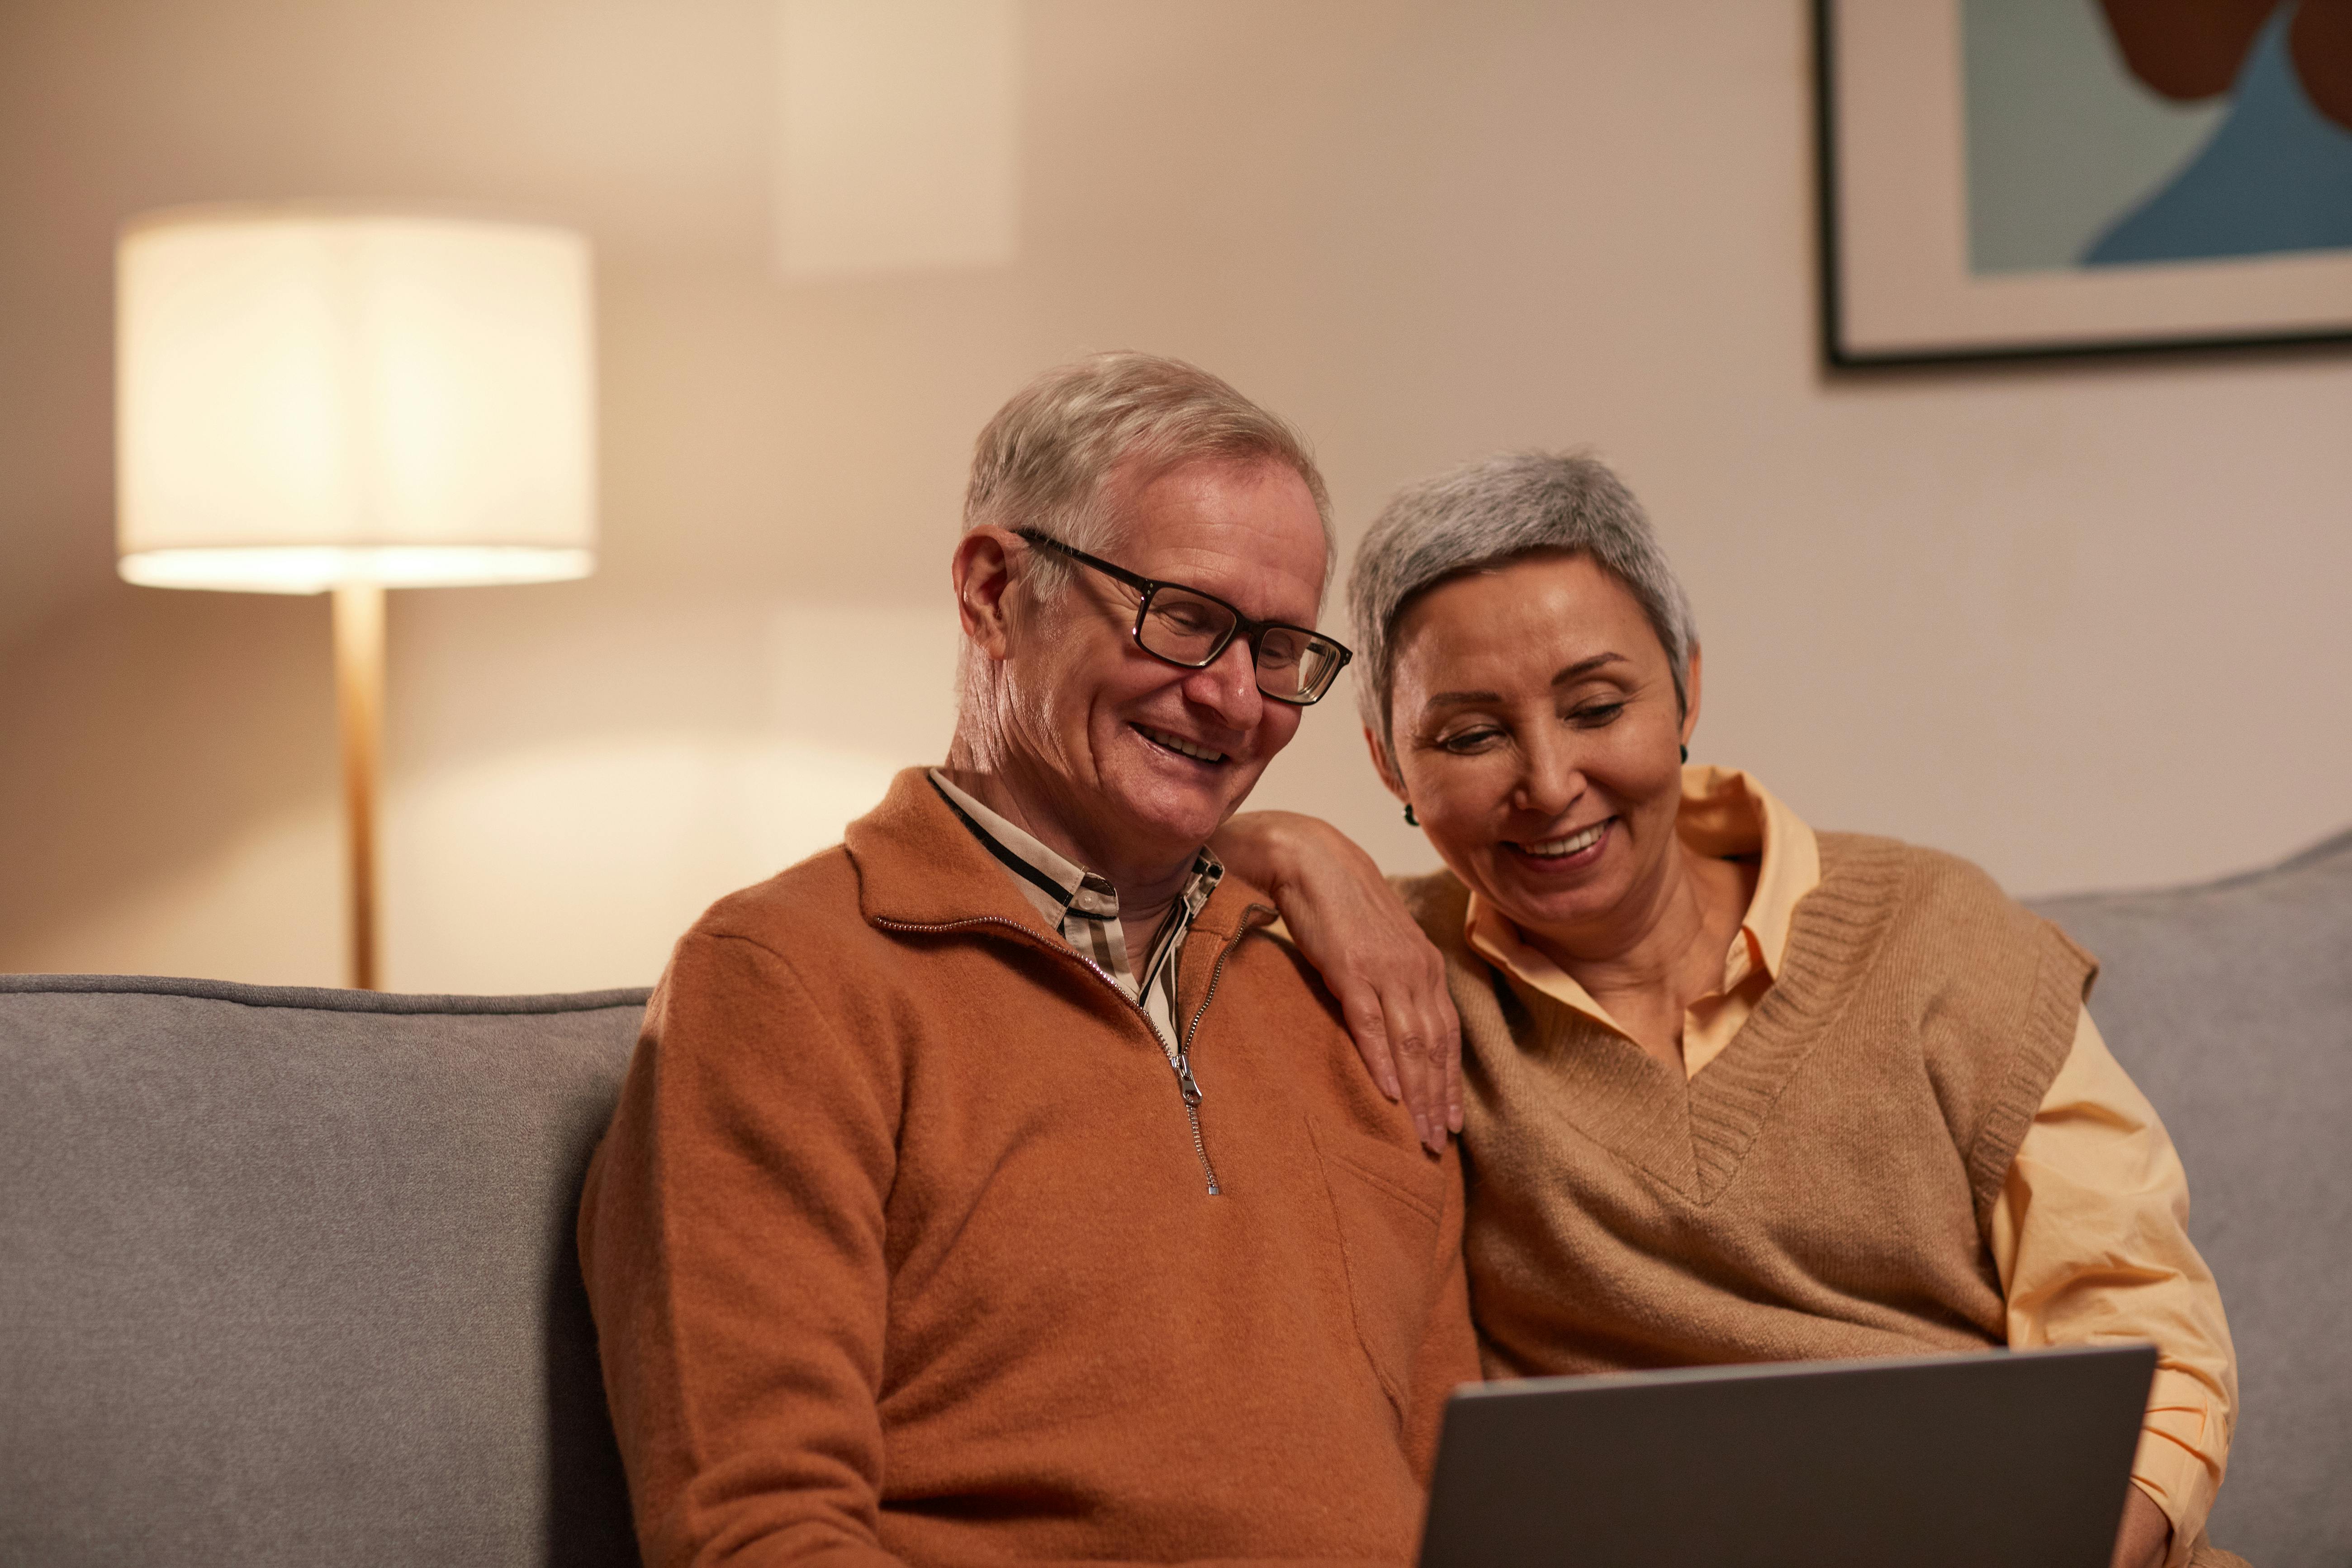 Ein glückliches Paar, das sich etwas auf einem Laptop ansieht | Quelle: Pexels